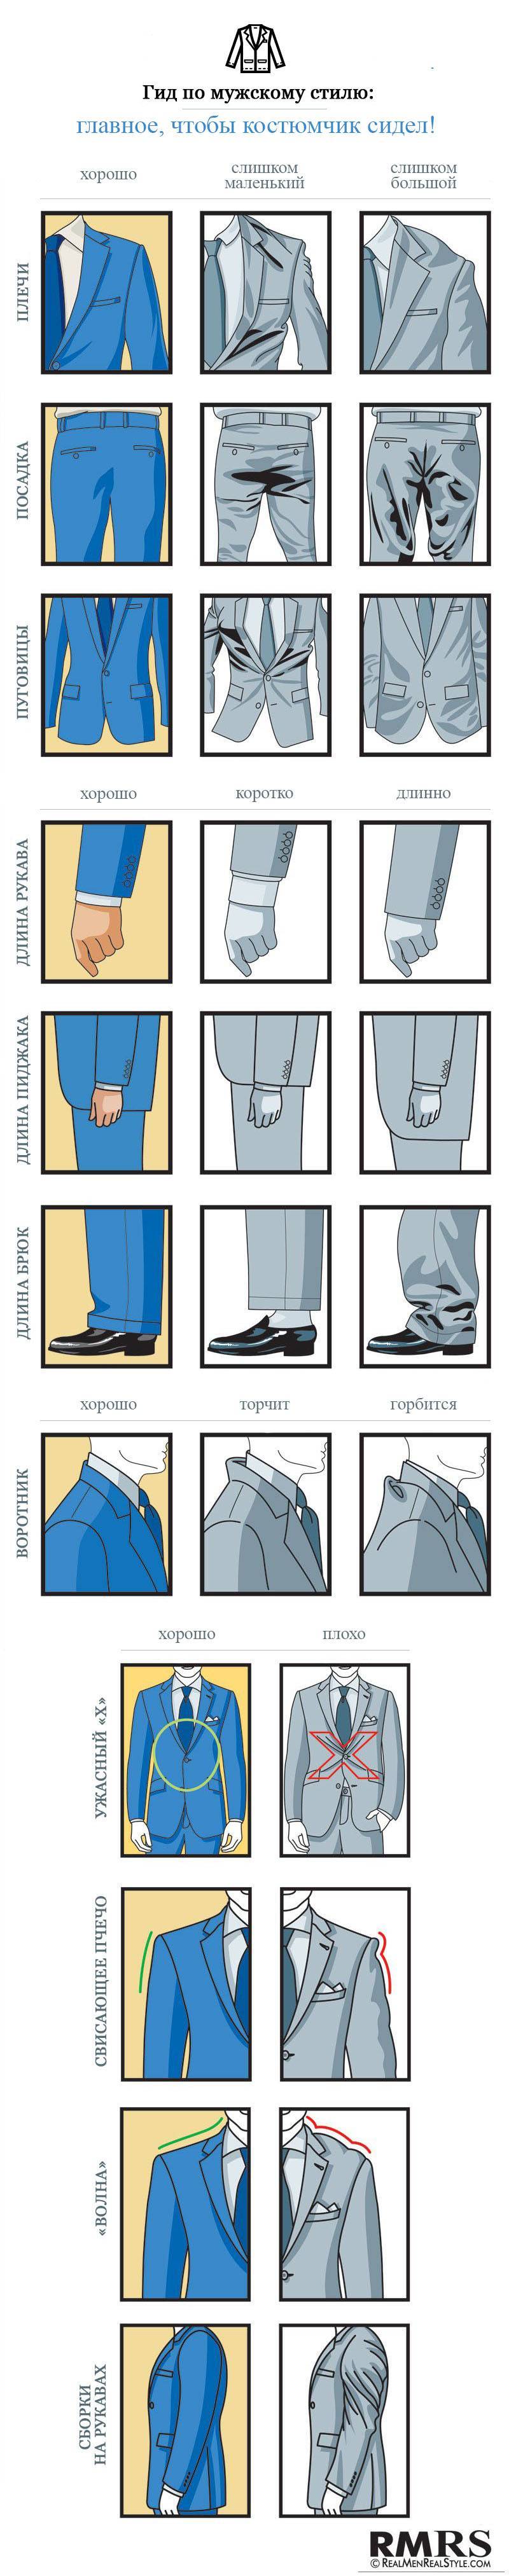 Размеры детских и подростковых пиджаков: таблицы размеров и размерные сетки